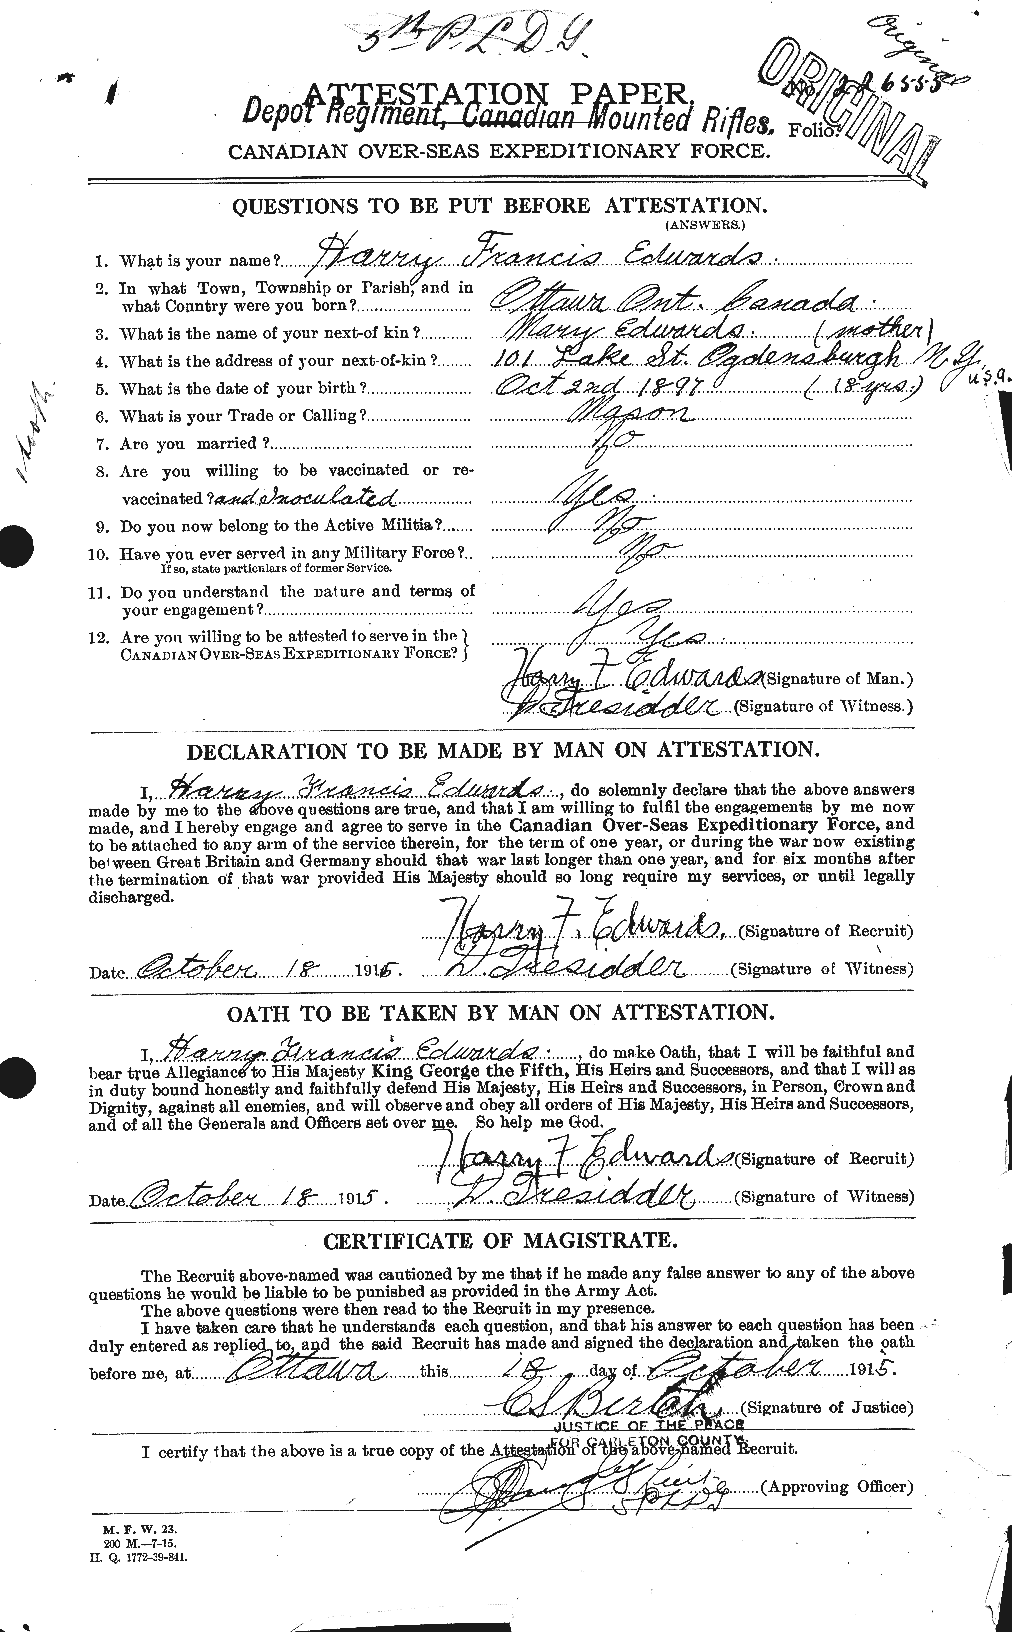 Dossiers du Personnel de la Première Guerre mondiale - CEC 309741a